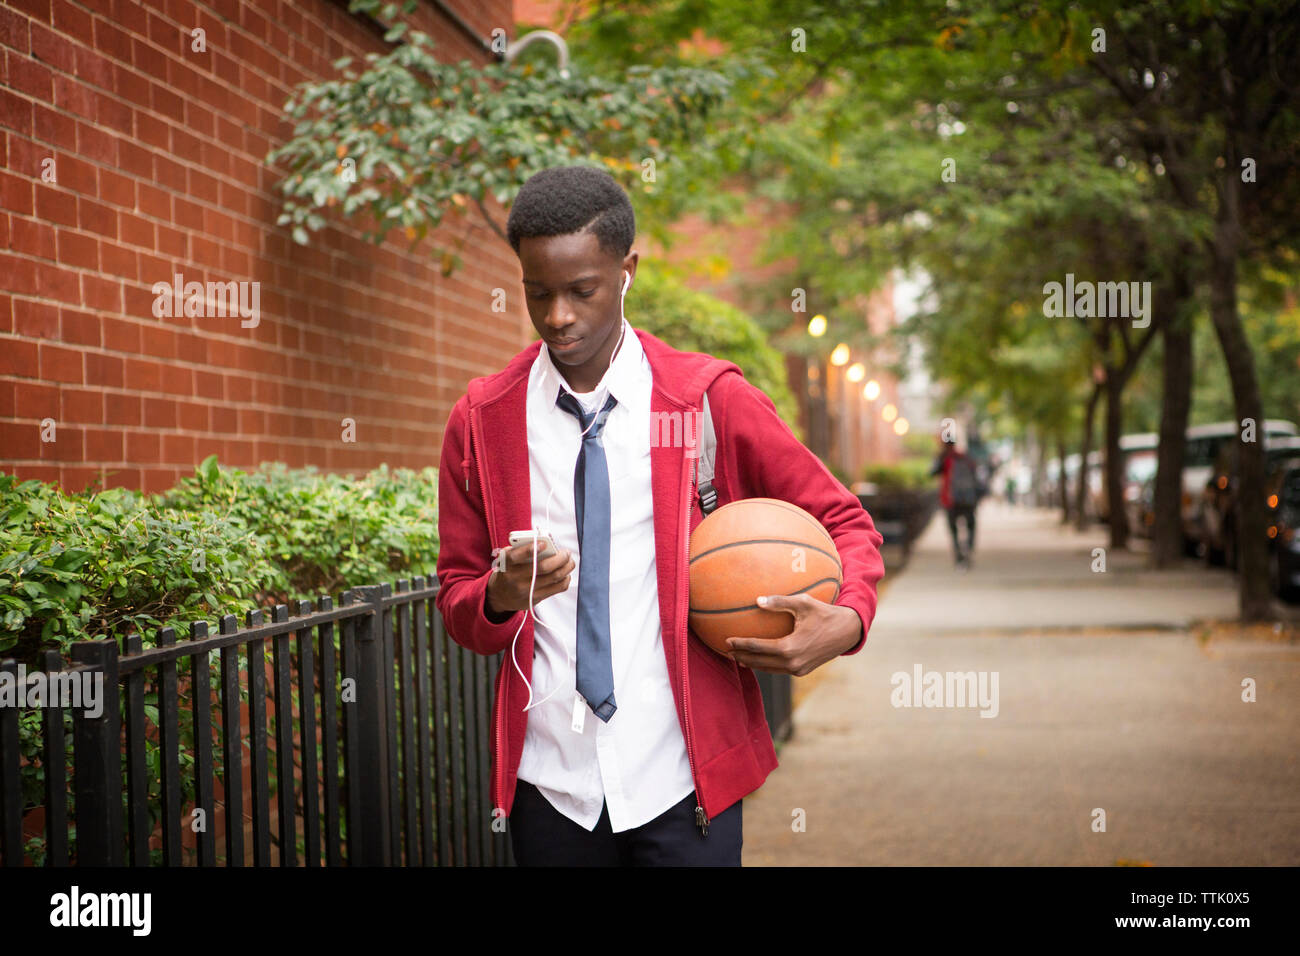 studente che usa il telefono e tiene il basket mentre cammina sul marciapiede Foto Stock